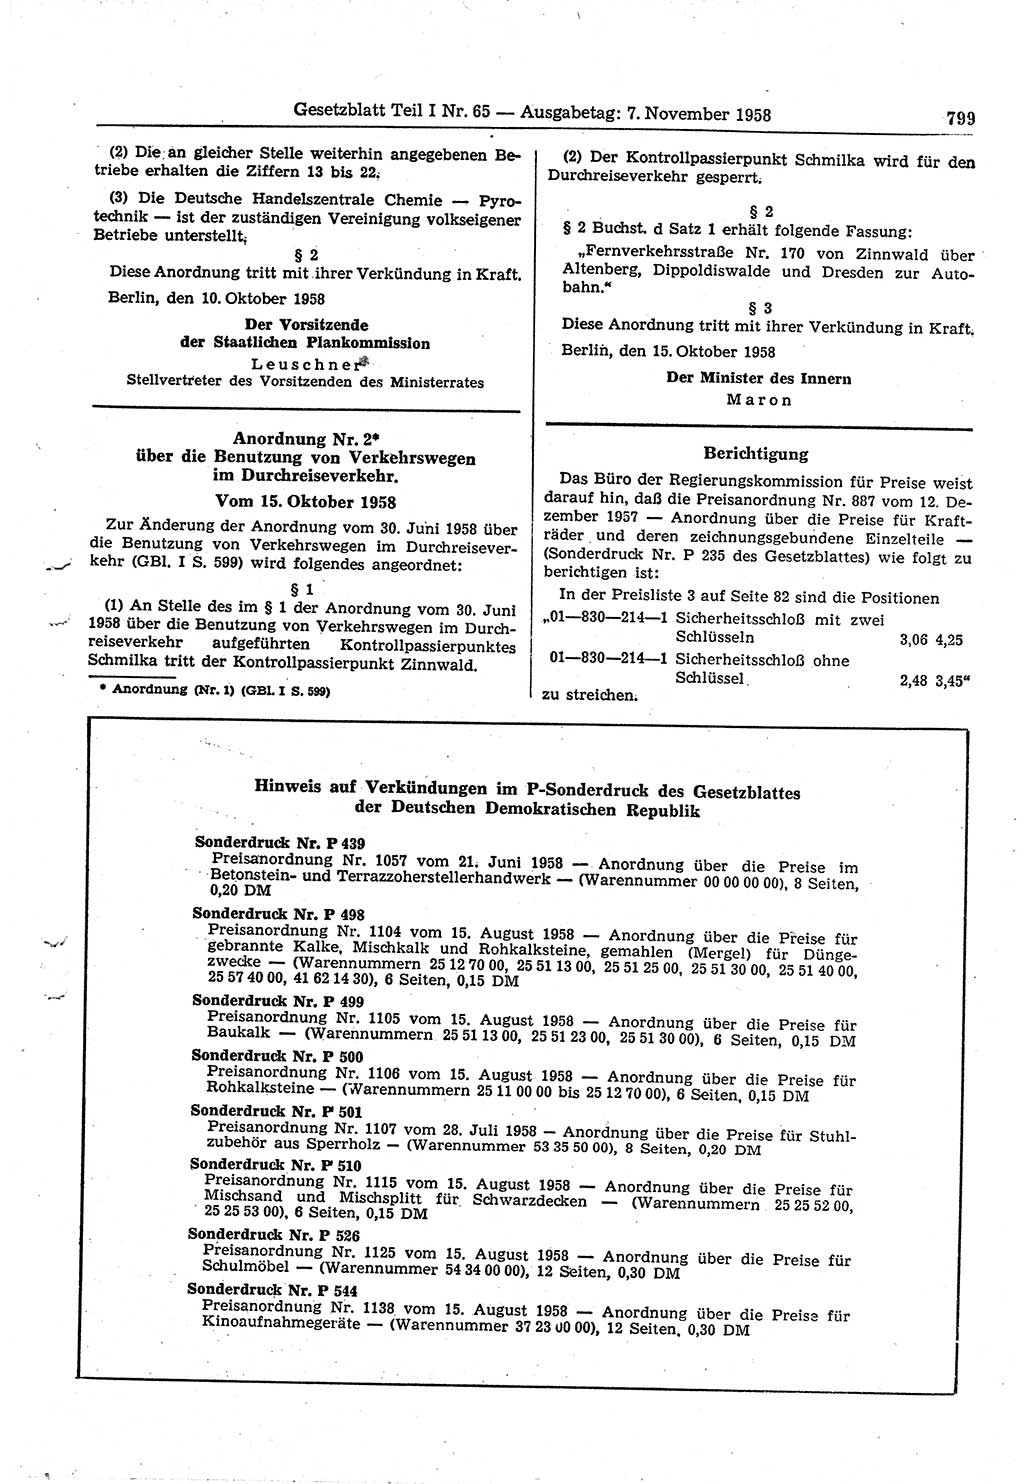 Gesetzblatt (GBl.) der Deutschen Demokratischen Republik (DDR) Teil Ⅰ 1958, Seite 799 (GBl. DDR Ⅰ 1958, S. 799)